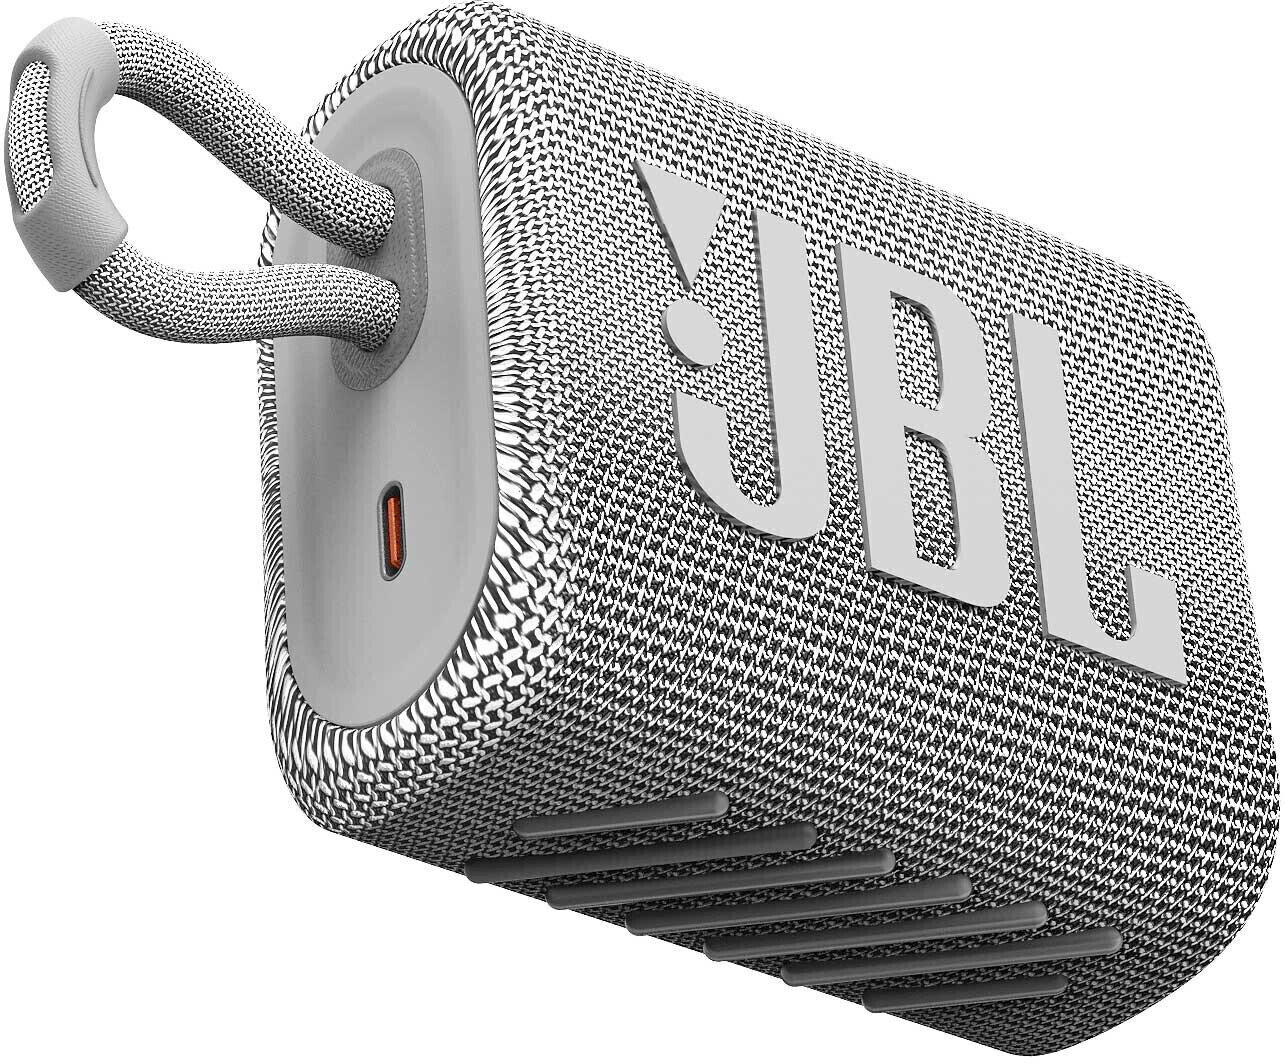 Portable Lautsprecher JBL GO 3 White